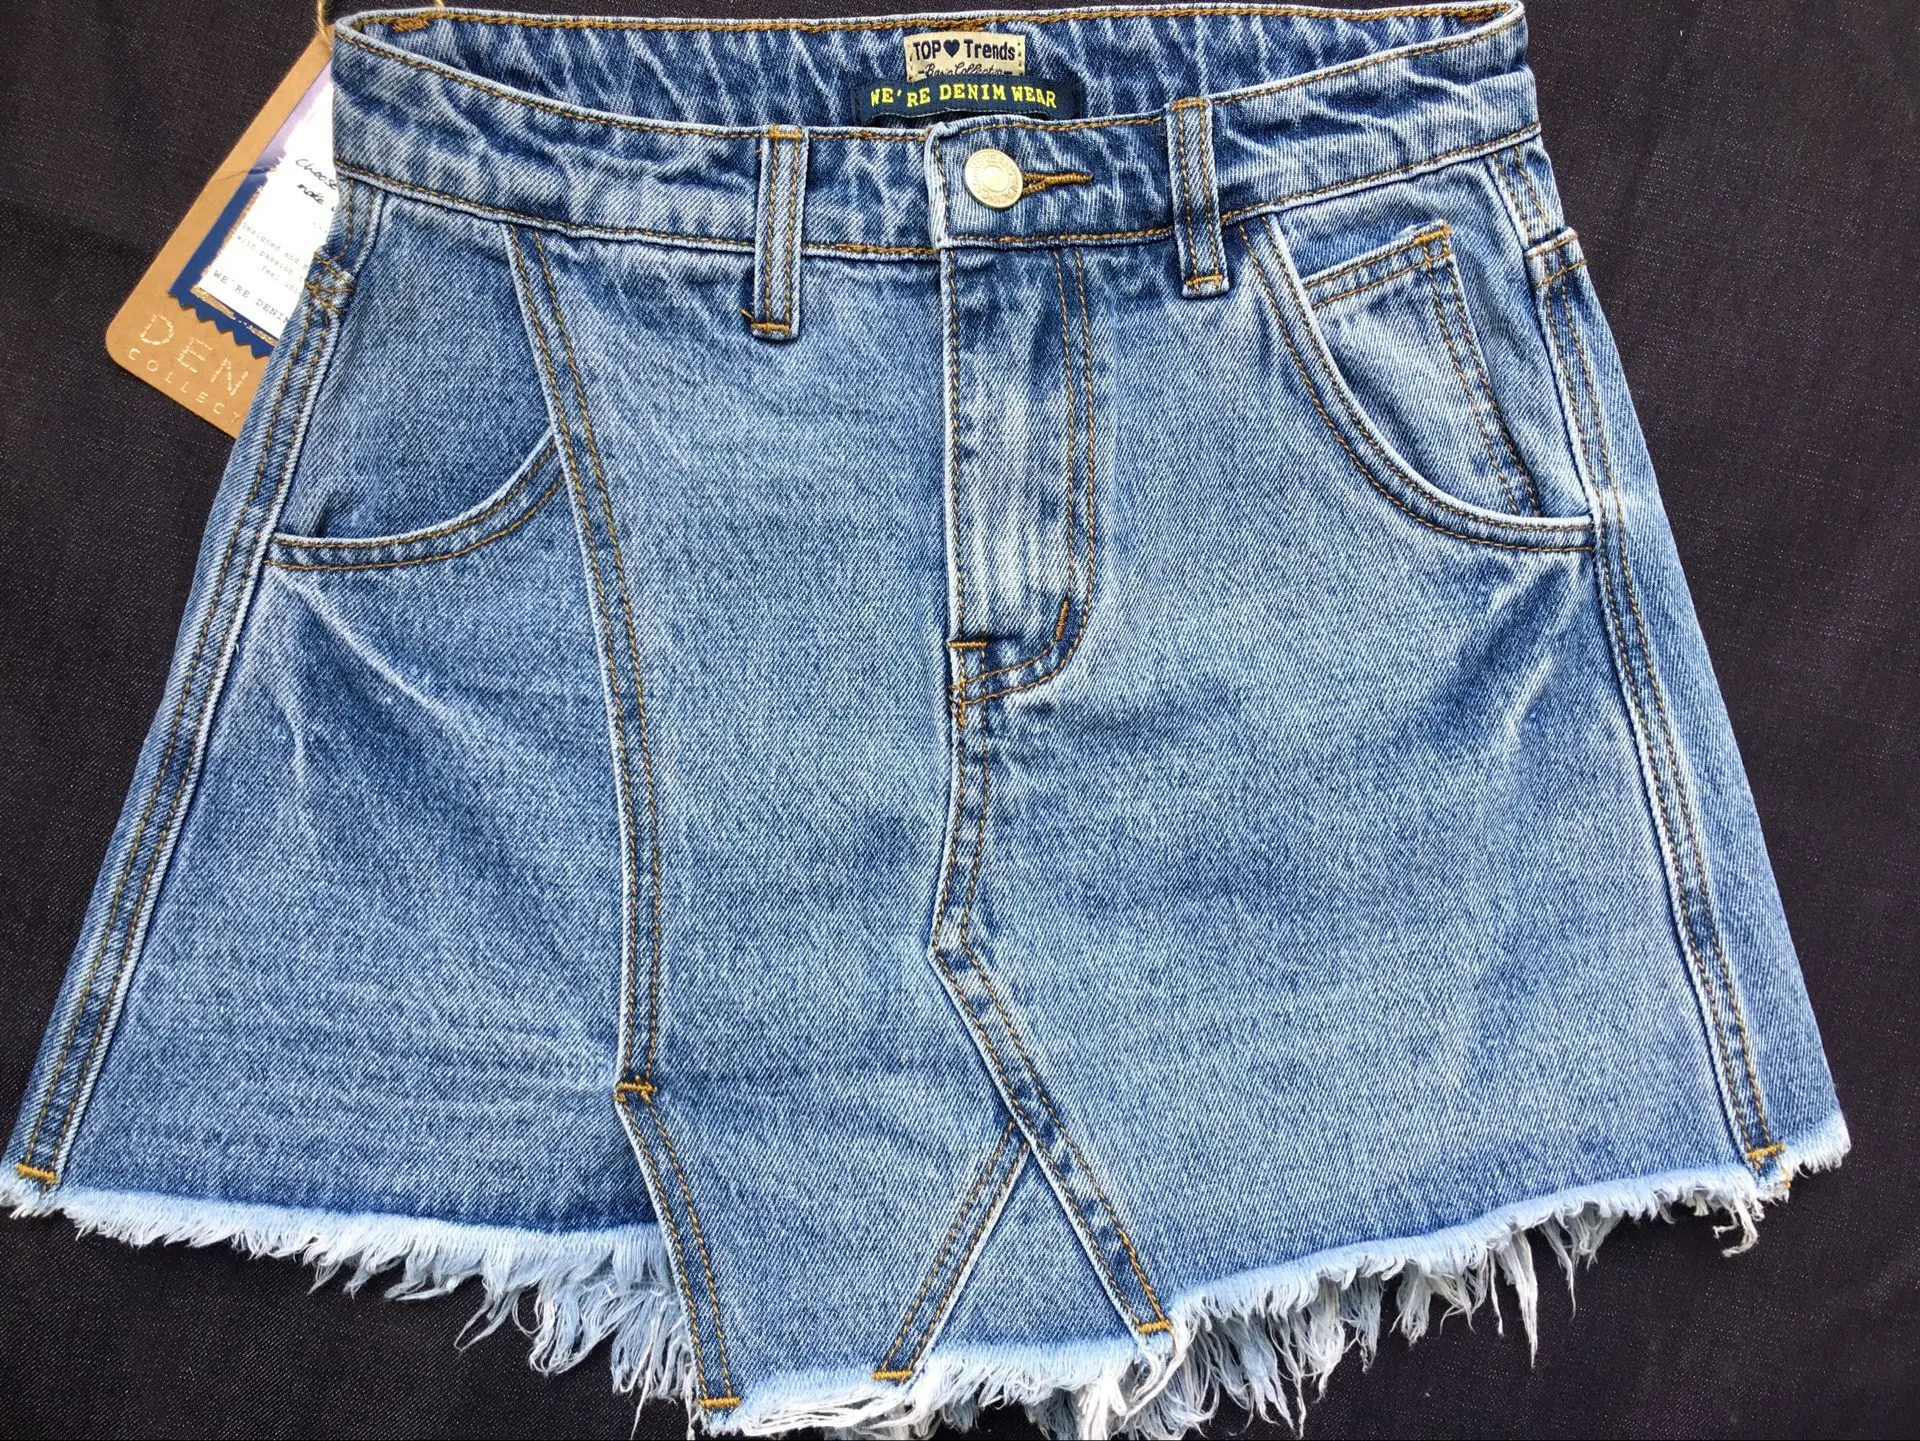 Летние женские короткие джинсы Синие рваные вареные потертые короткие джинсовые юбки тонкие эластичные джинсовые шорты для женщин